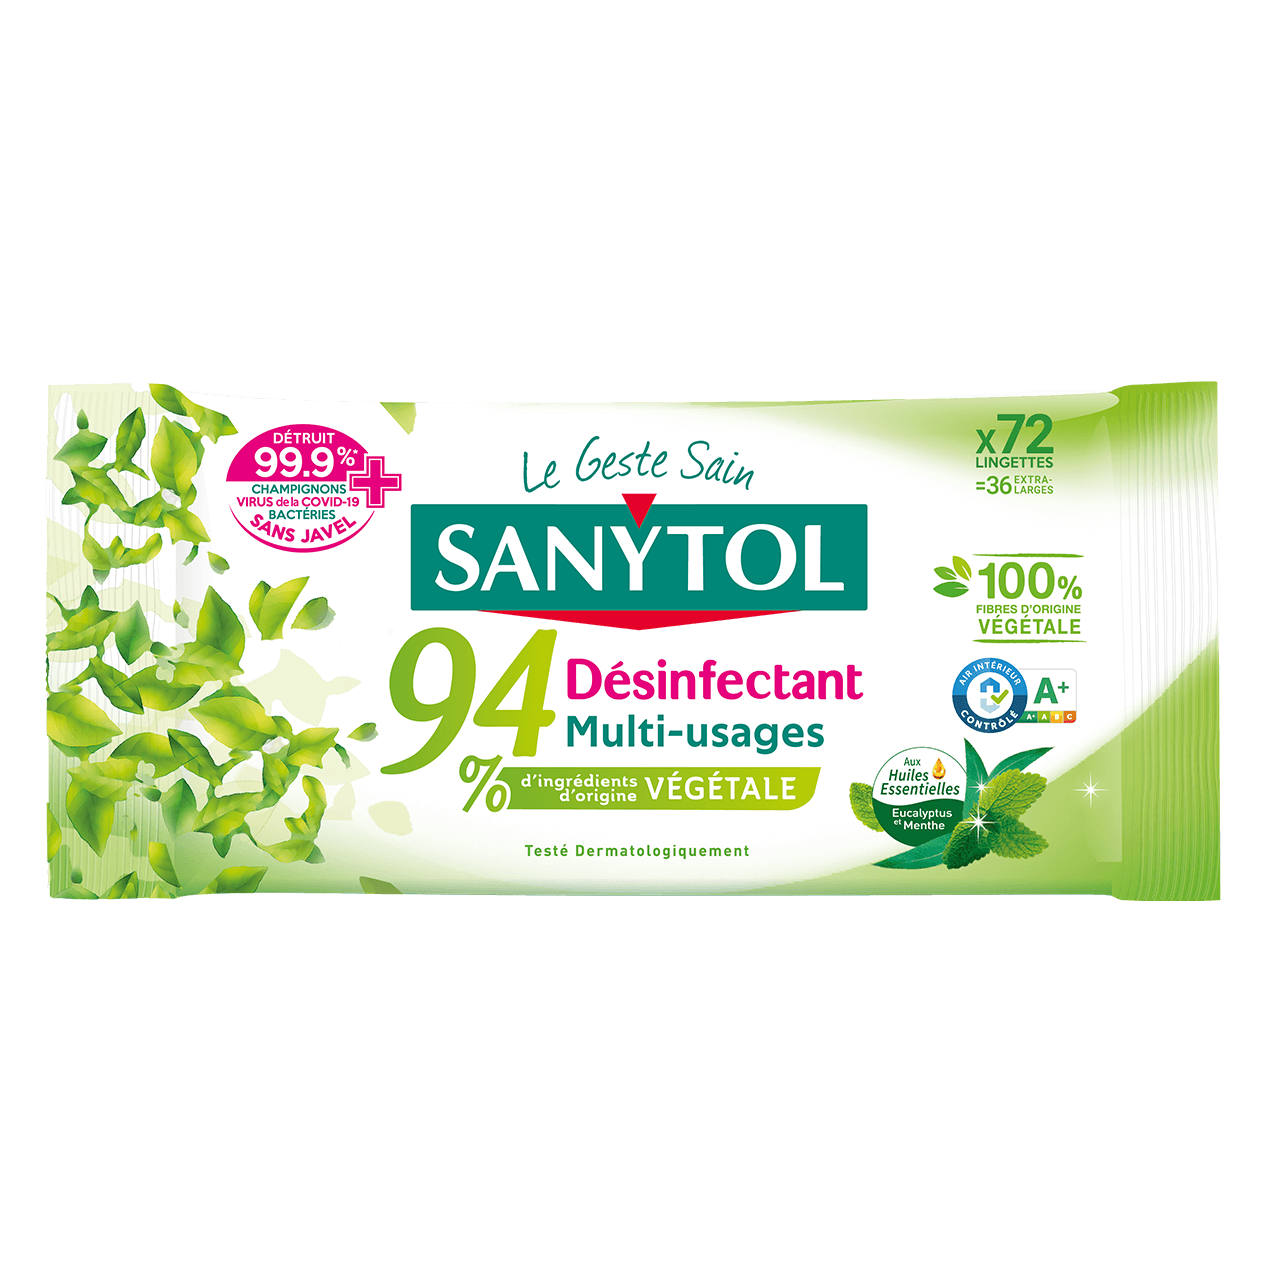 Sanytol revient à Lyon pour produire des lingettes désinfectantes